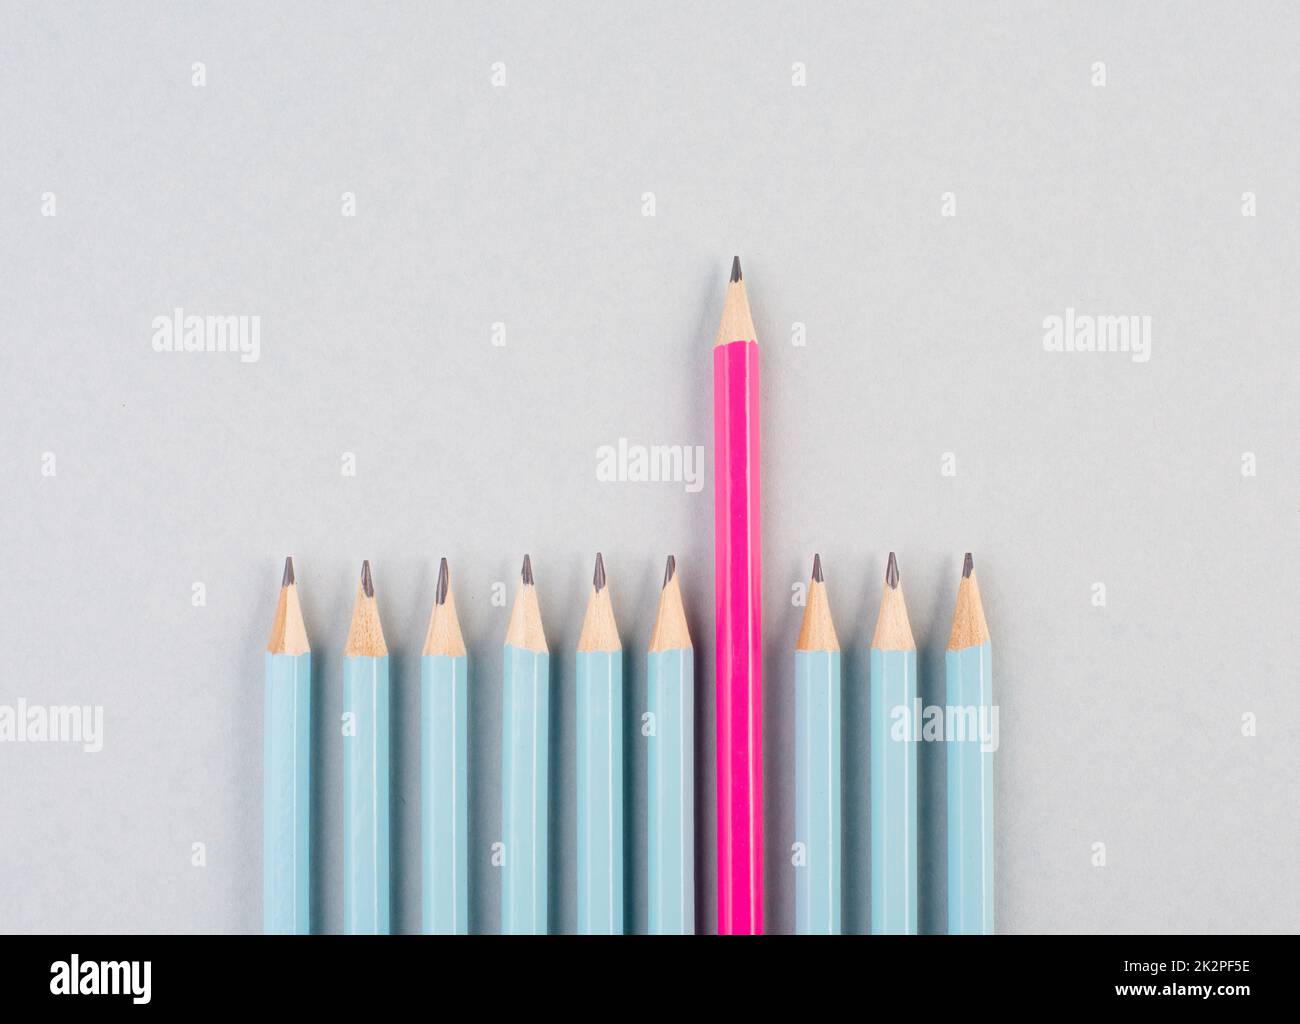 Crayons bleus dans une rangée, un stylo rose se distingue, être différent, leadership et le concept de travail d'équipe Banque D'Images